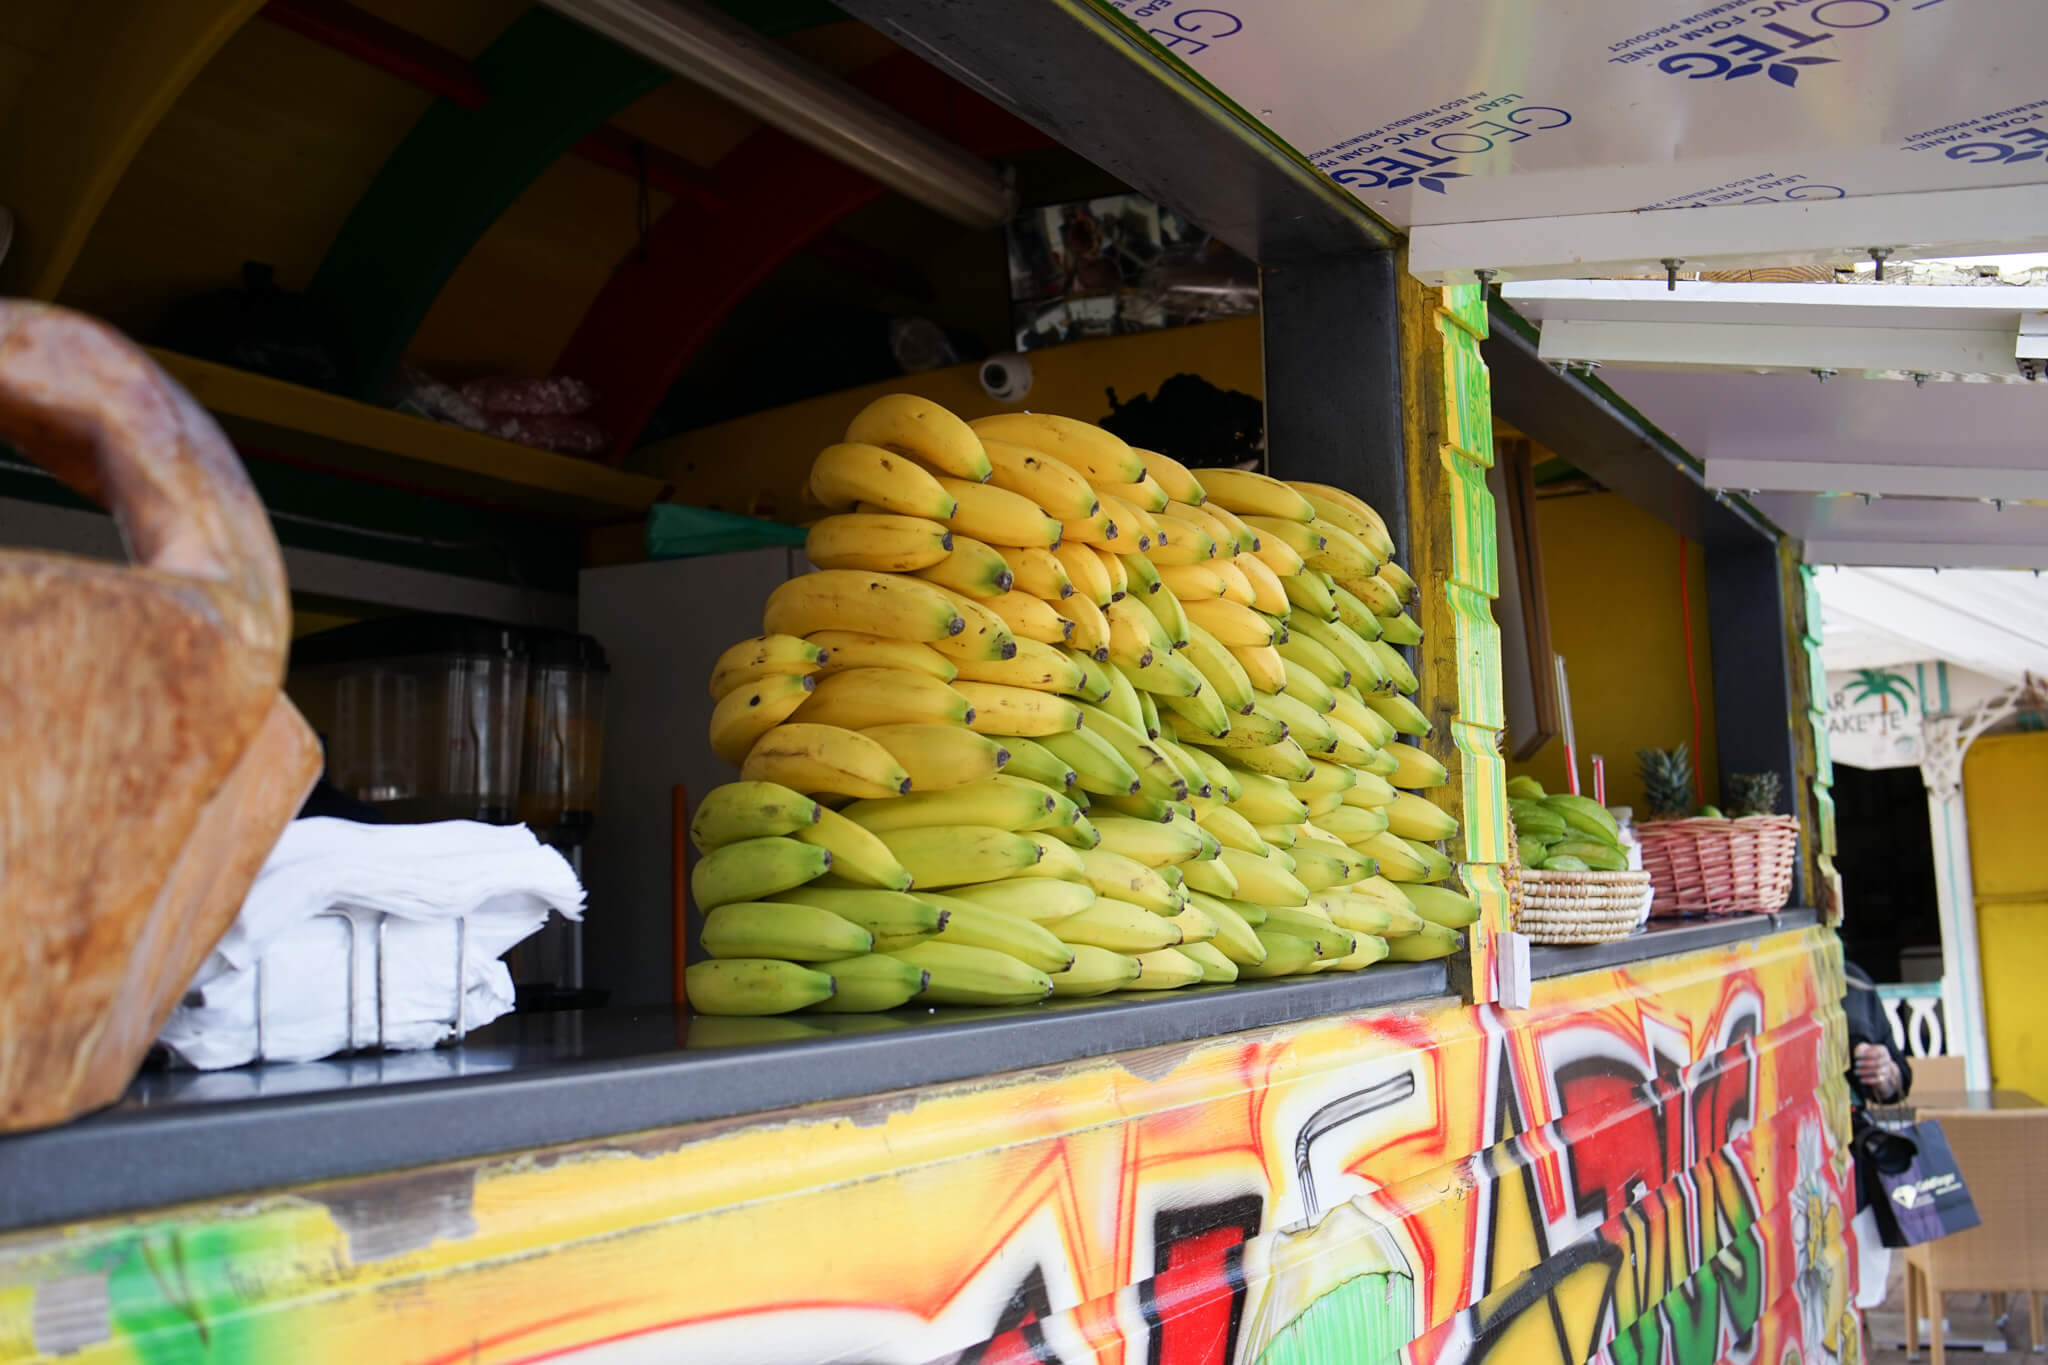 Markt in Marigot, Saint Martin - Smoothie Stand mit Bananen